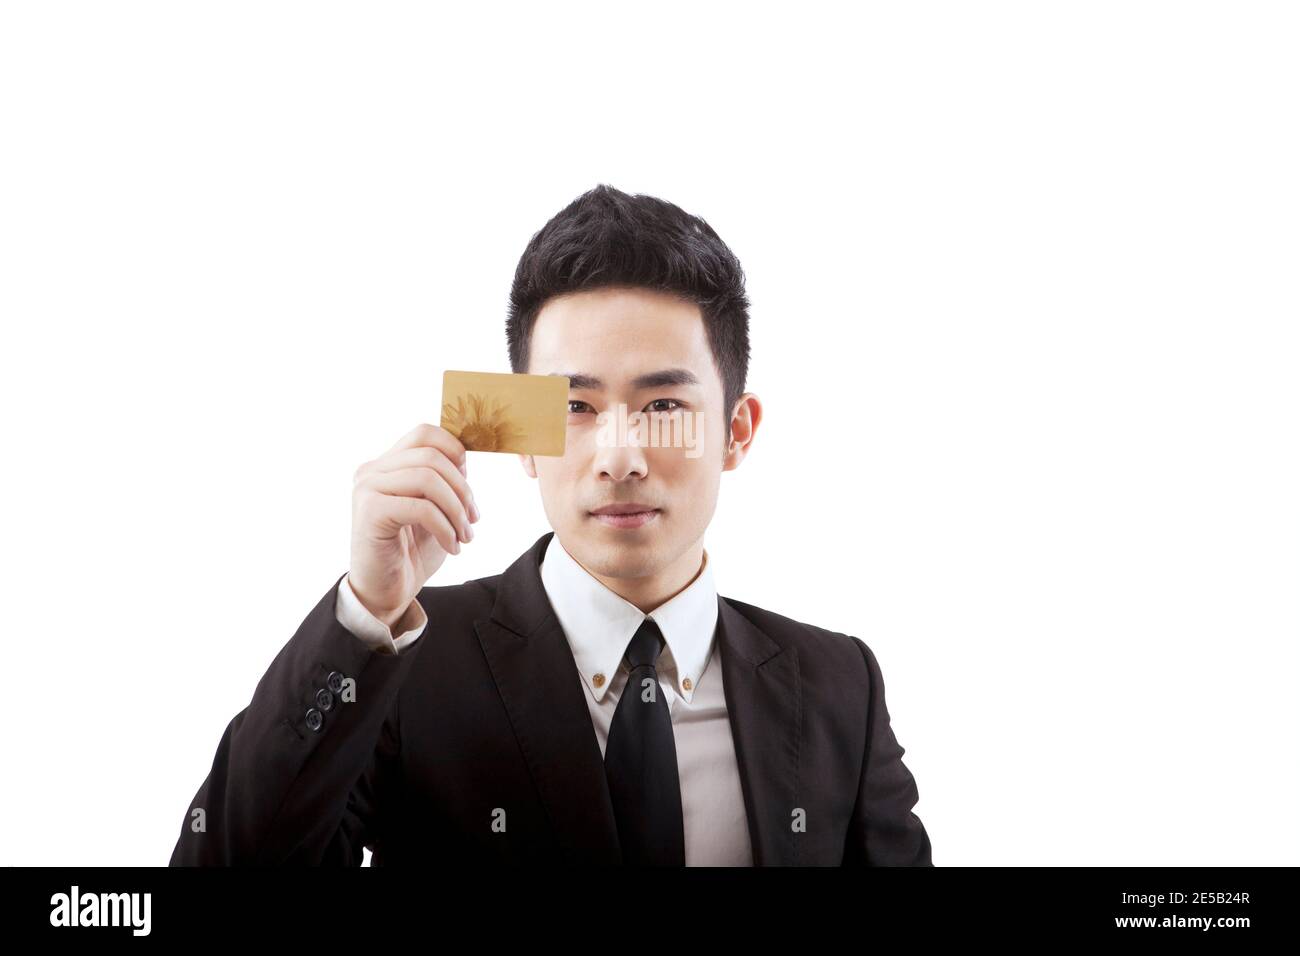 Personnes d'affaires tenant une carte de crédit photo de haute qualité Banque D'Images